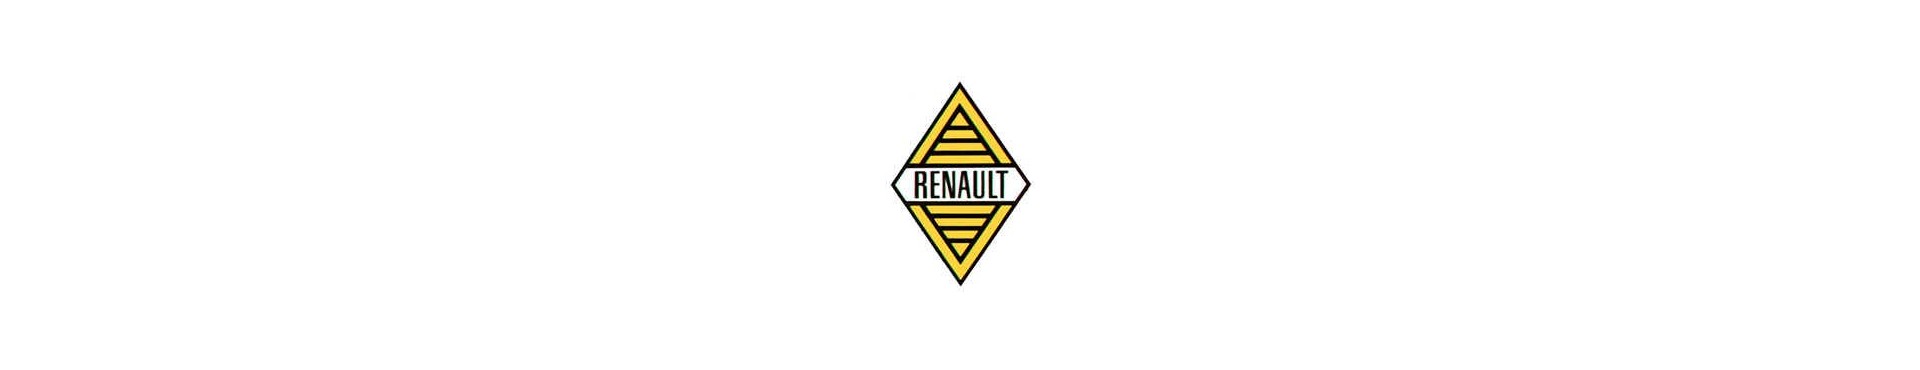 Pour Renault